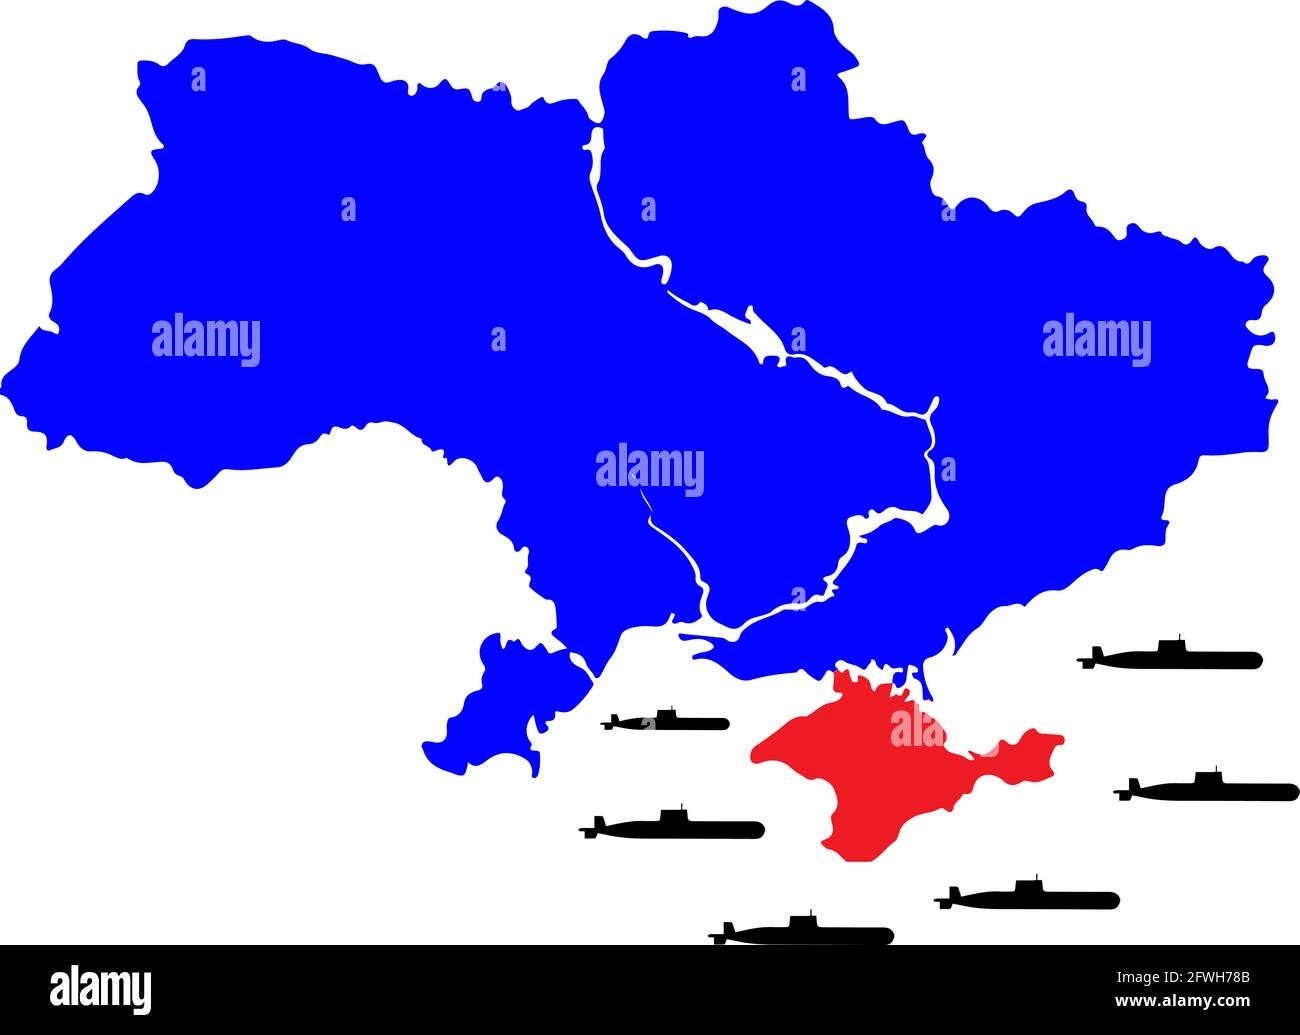 Blau kolorierte Ukraine-Karte. Landkarte der politischen Ukraine. Krim-Halbinsel. Krimkrieg und russischer Konflikt. Russische krim-Annexion. Vektorgrafik ma Stock Vektor